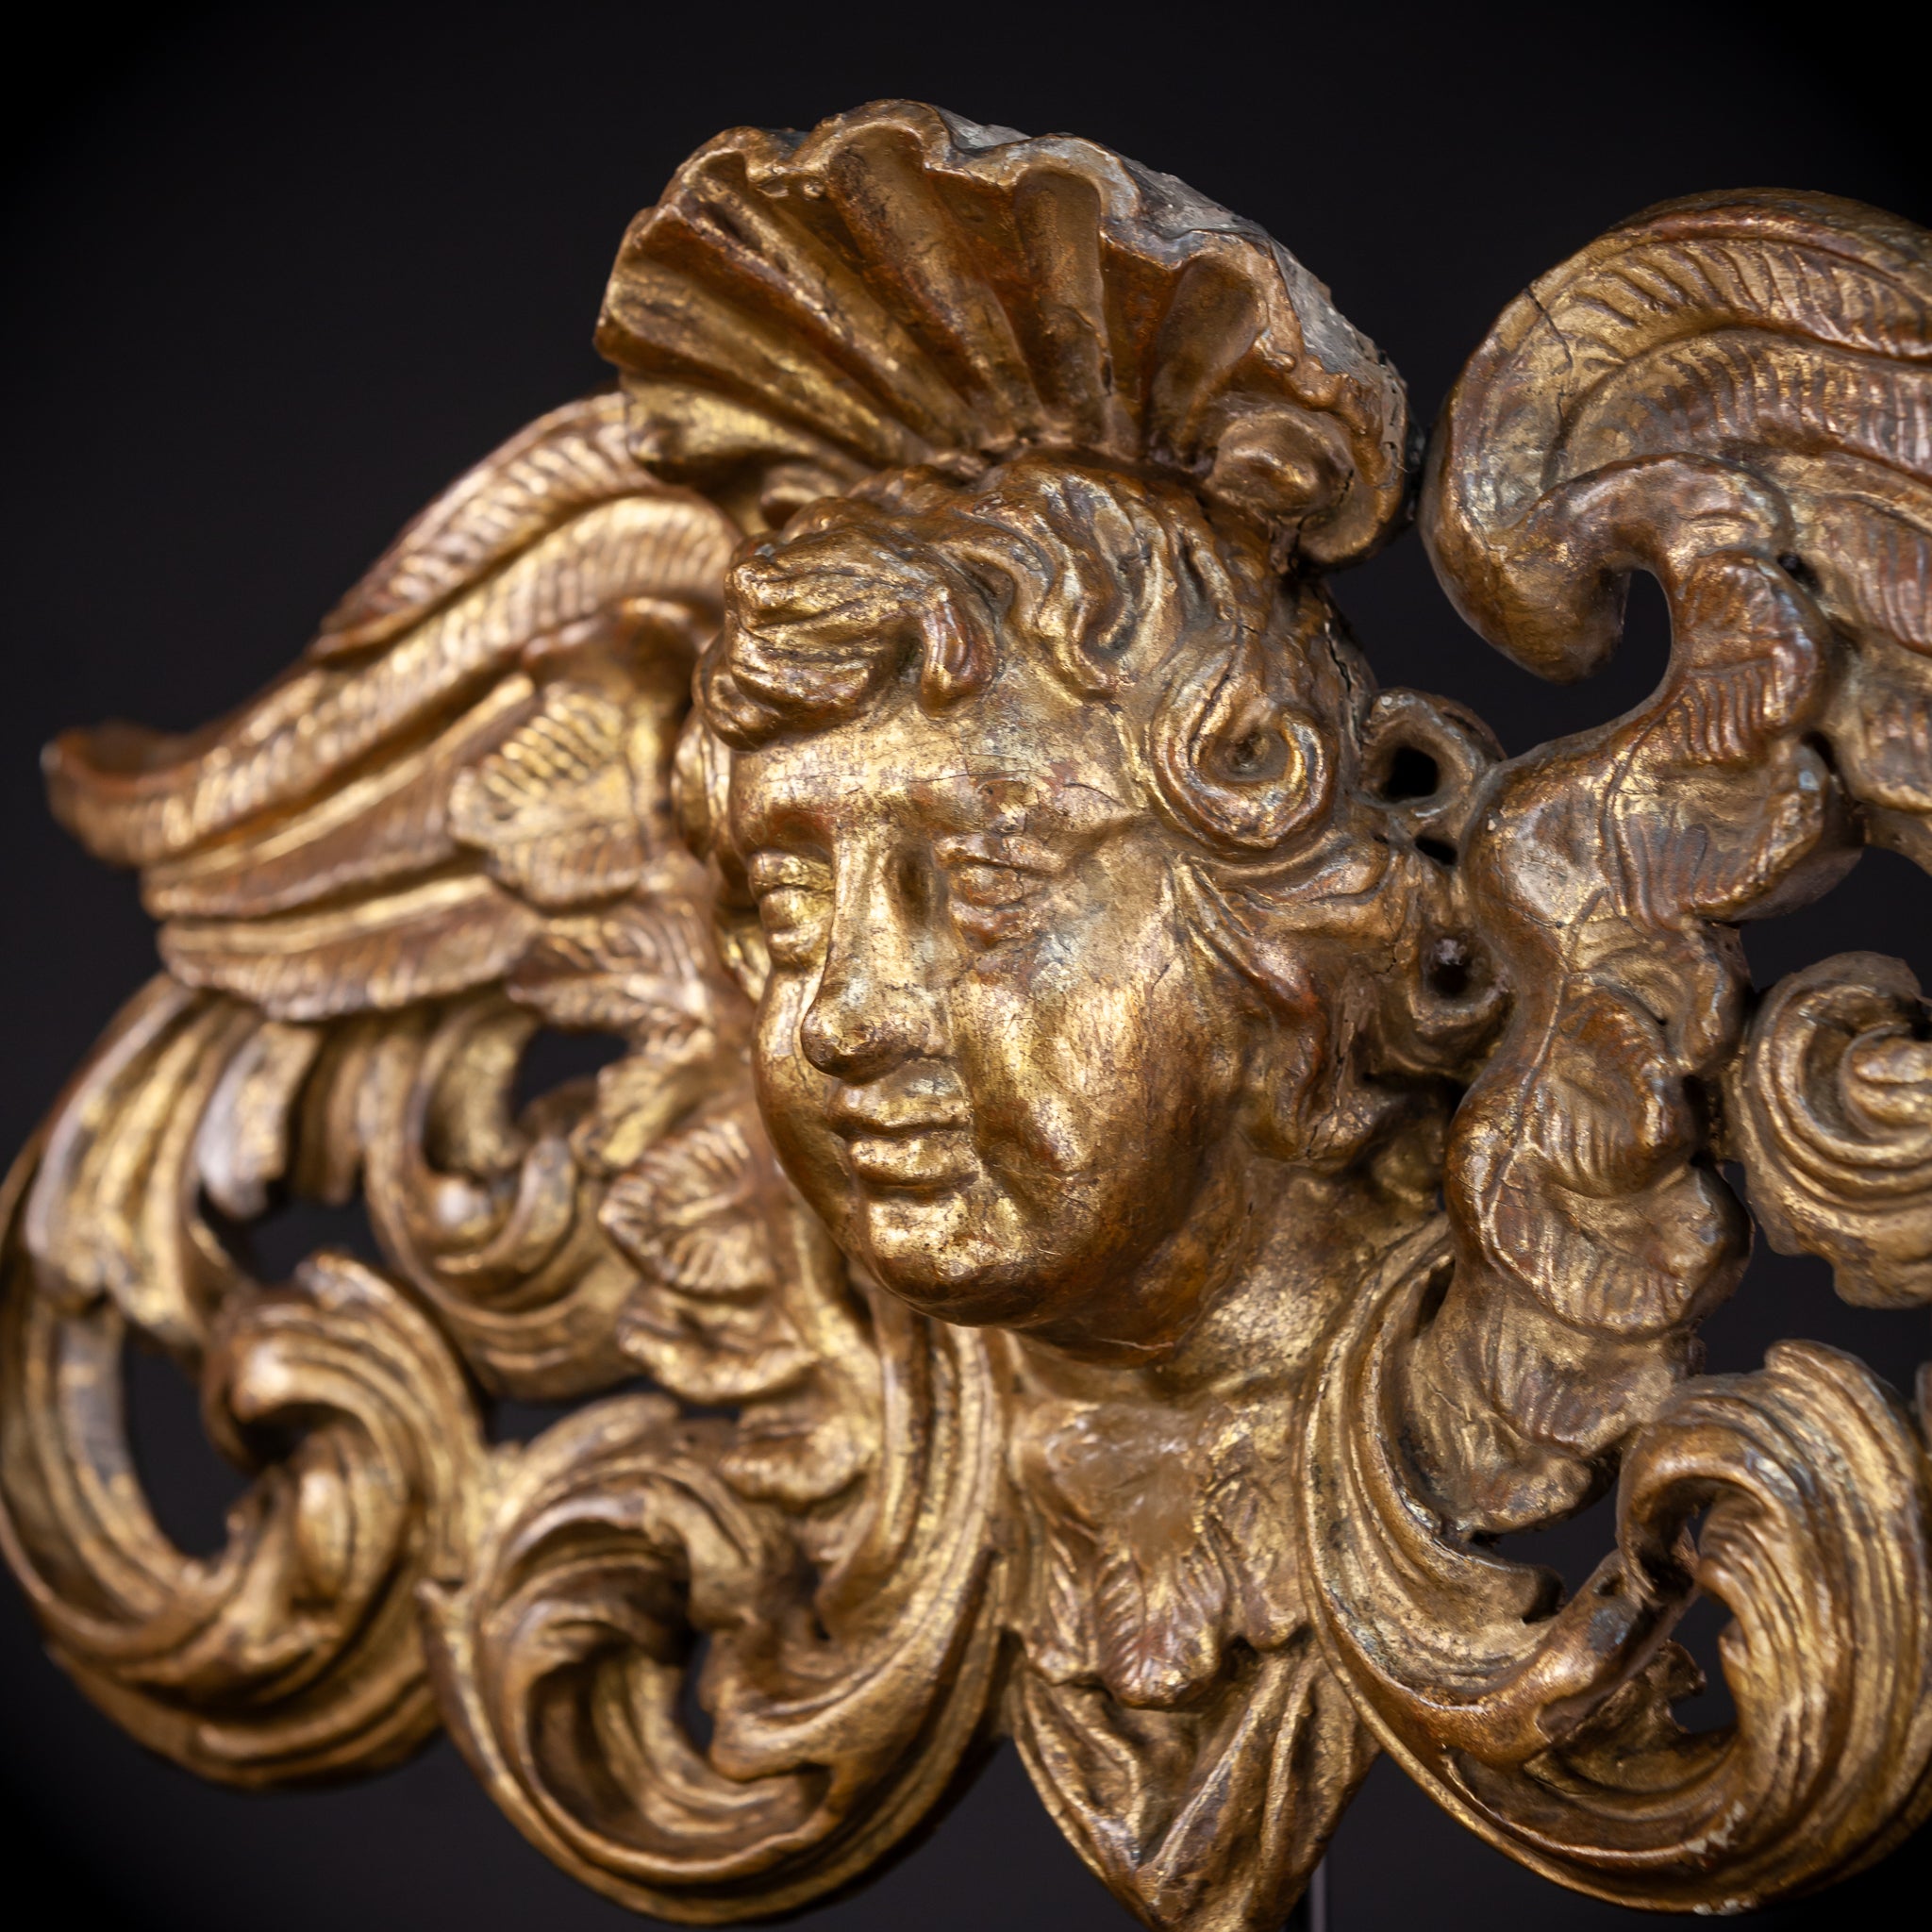 Angel Wood Carving Sculpture | 1800s Antique | 24.8" / 63 cm